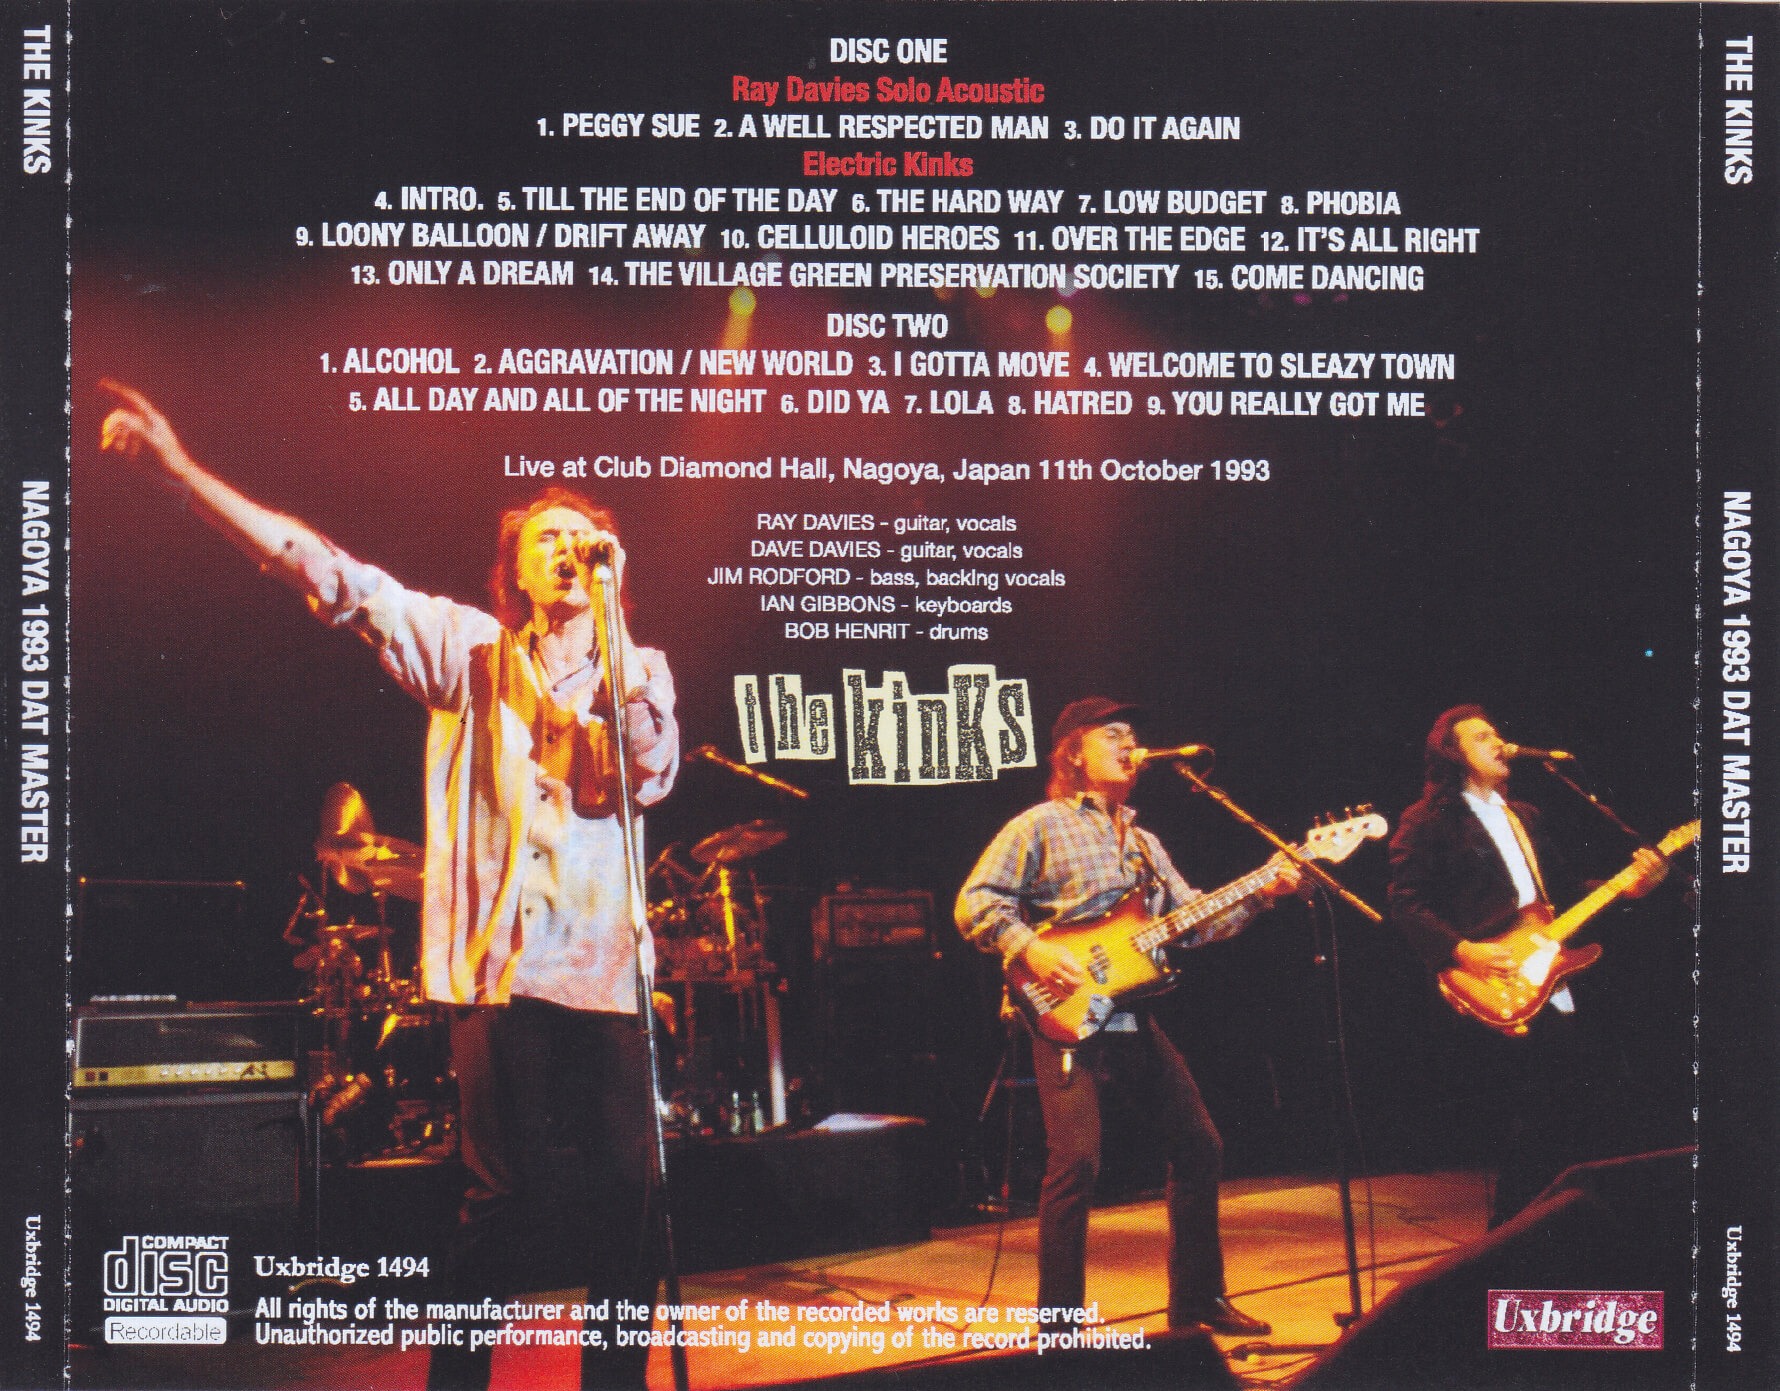 Kinks / Nagoya 1993 Dat Master / 2CDR – GiGinJapan